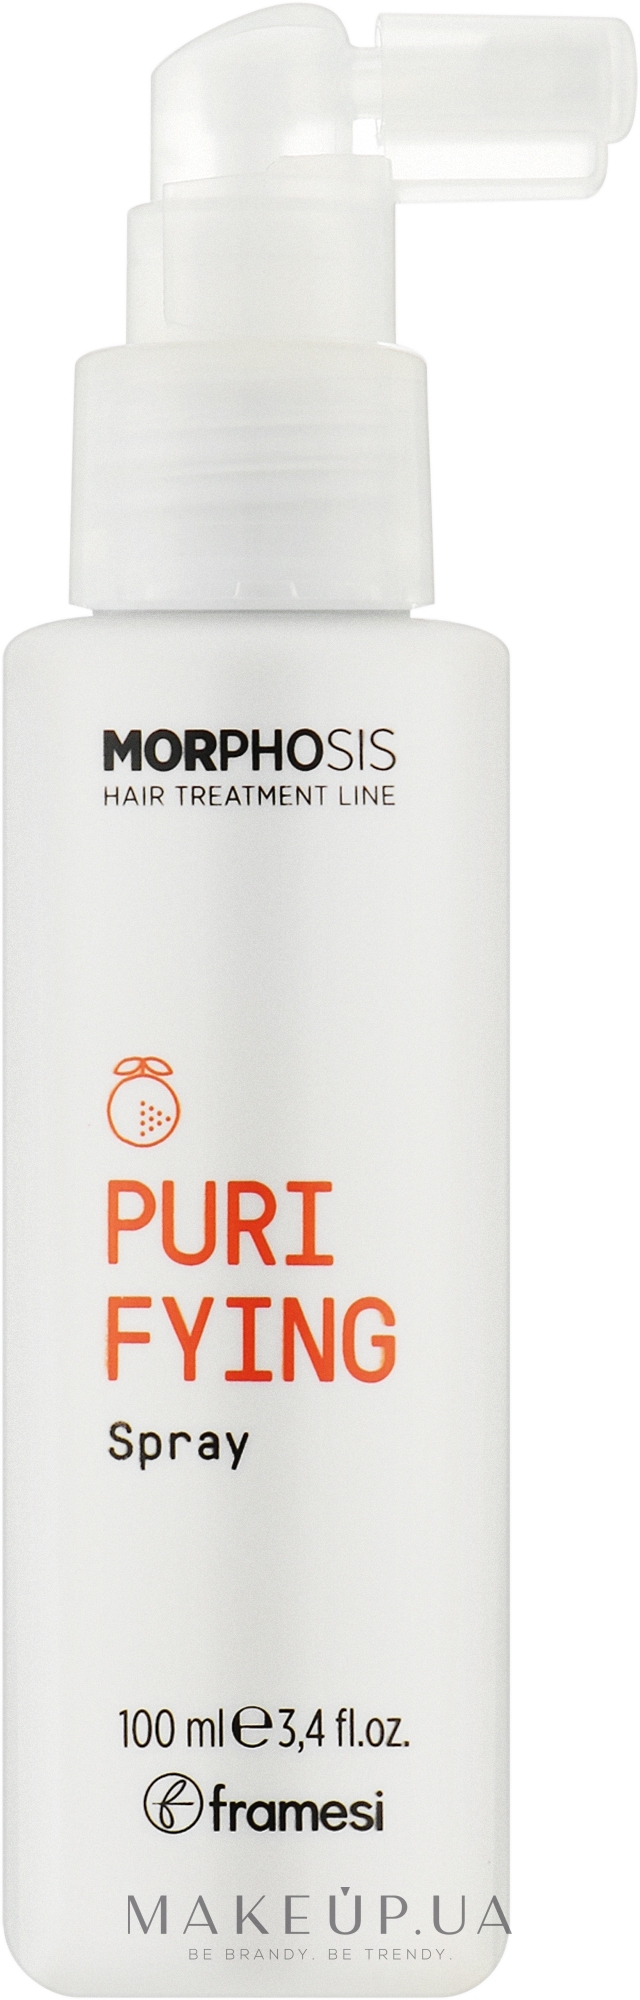 Очищающий и освежающий спрей для волос - Framesi Morphosis Purifying Spray — фото 100ml